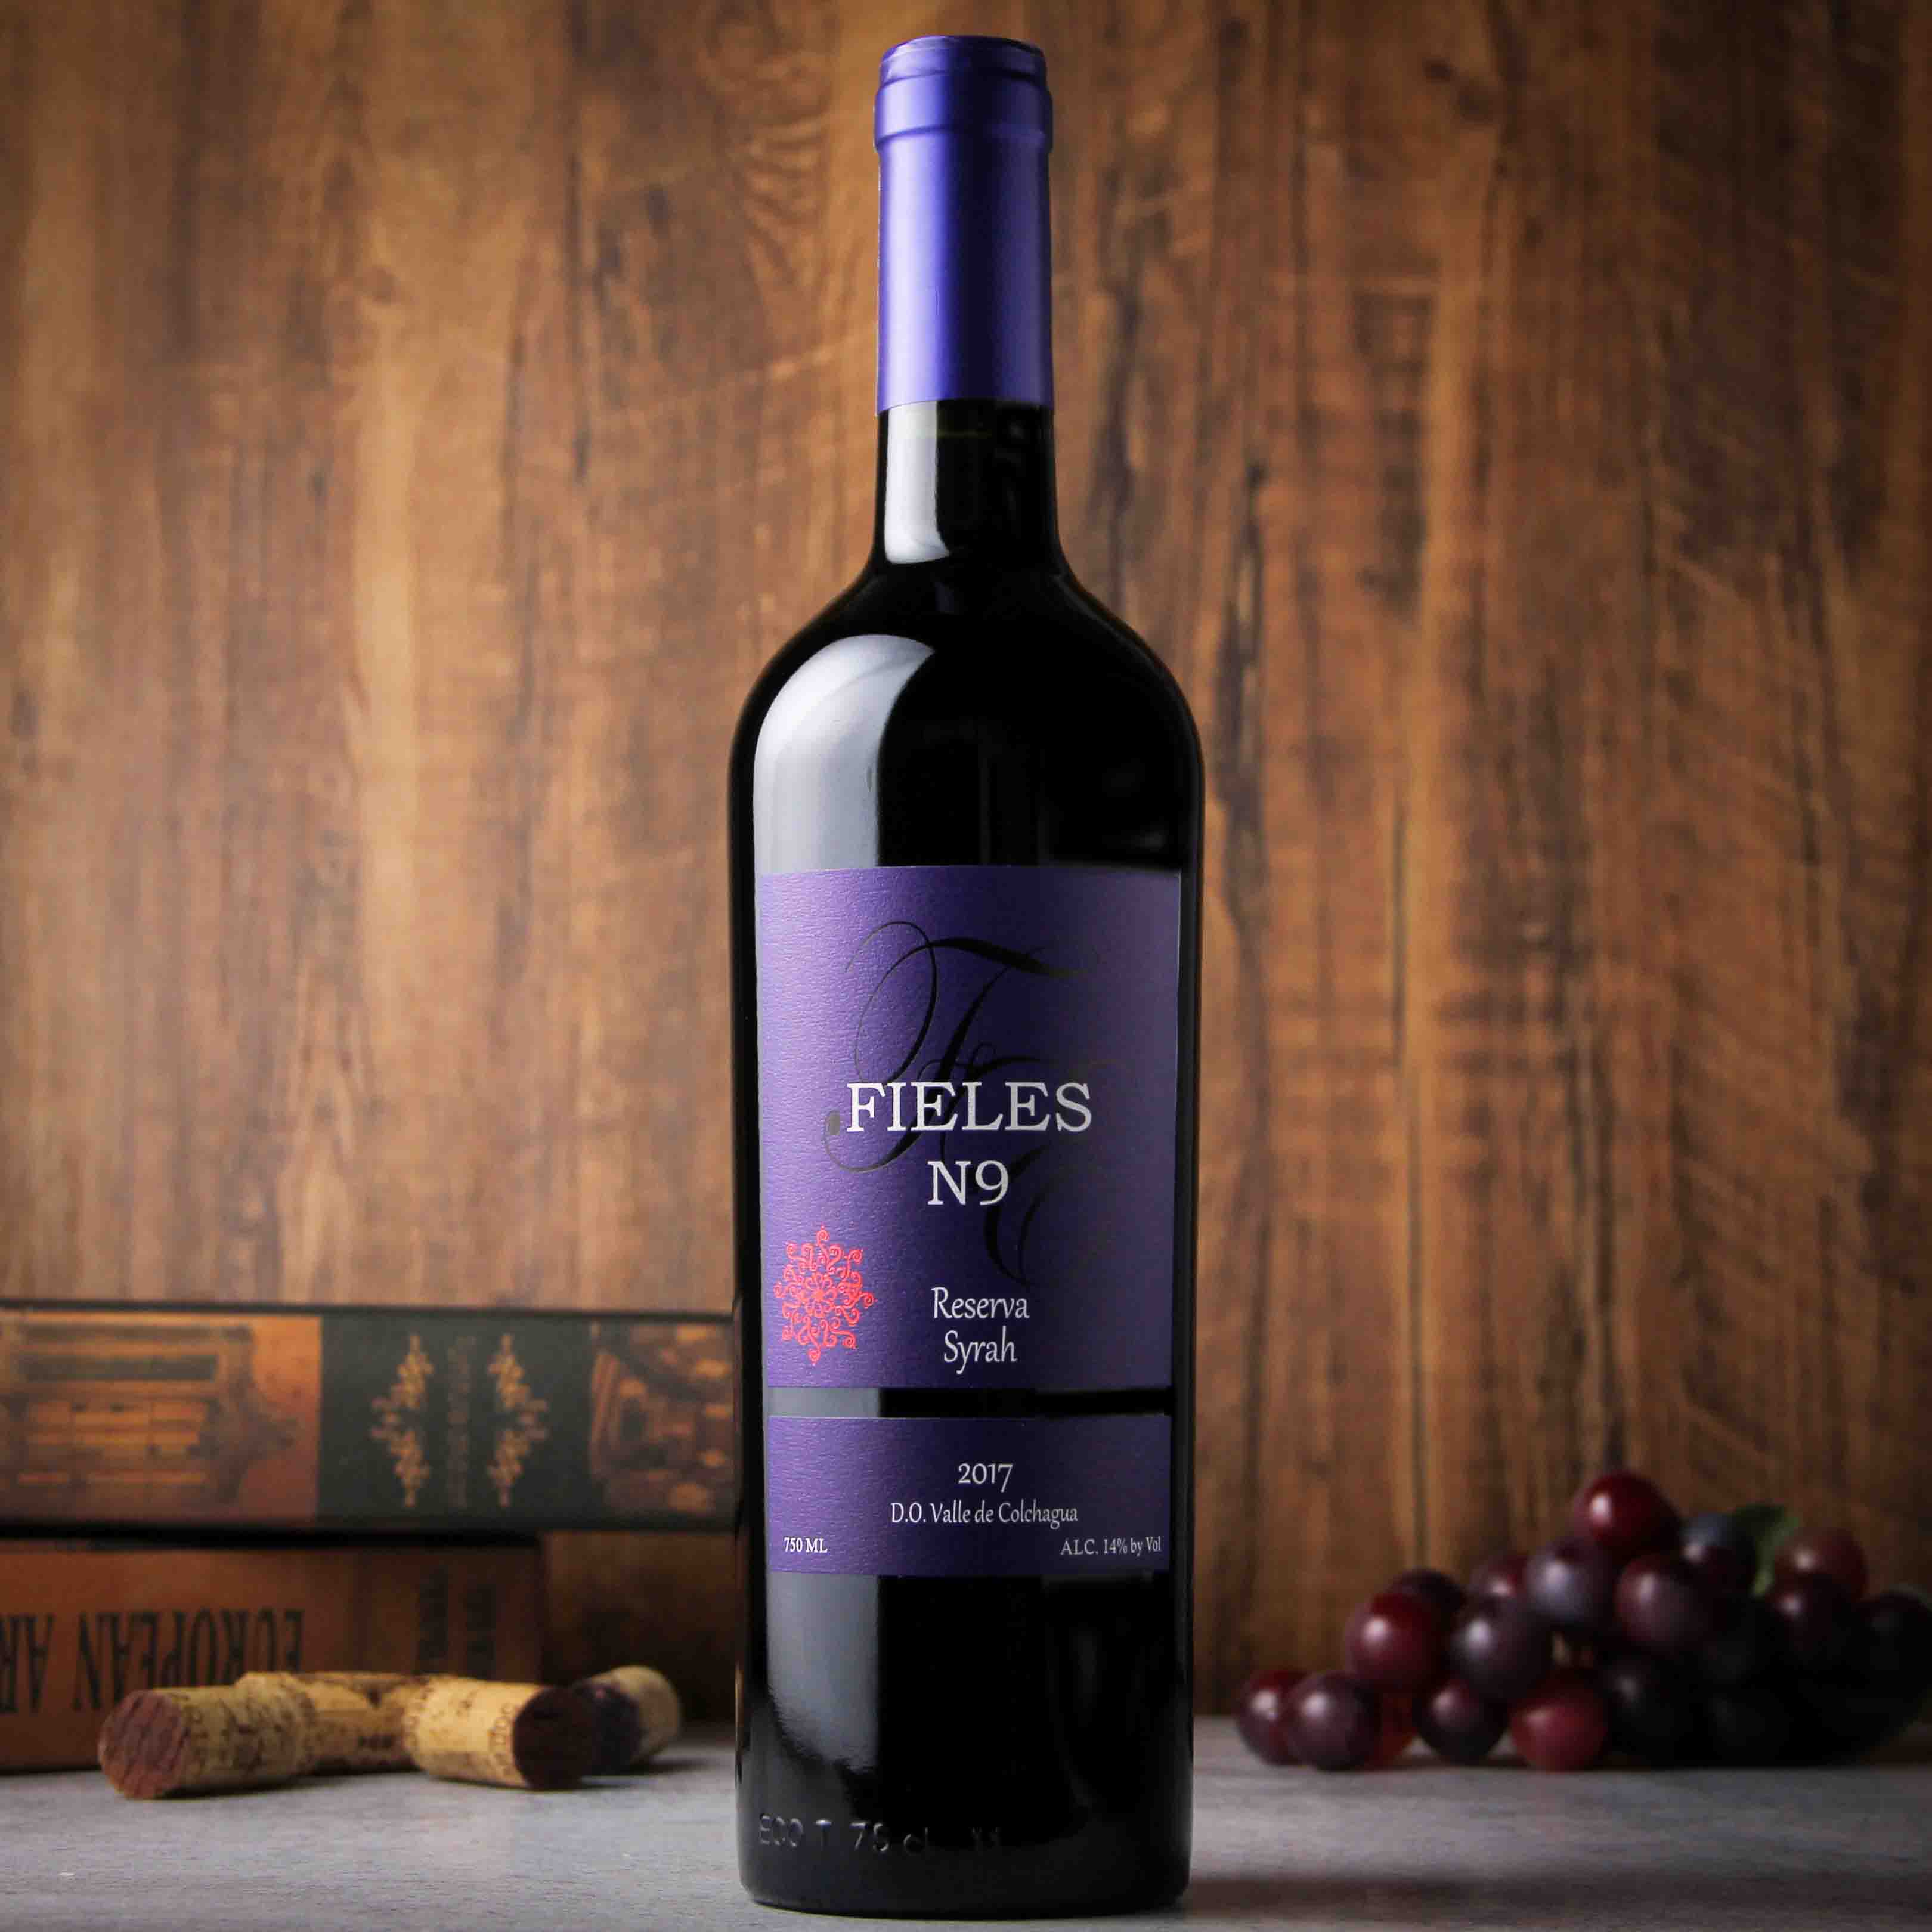 智利科尓查瓜谷菲利斯珍藏西拉干红葡萄酒N9